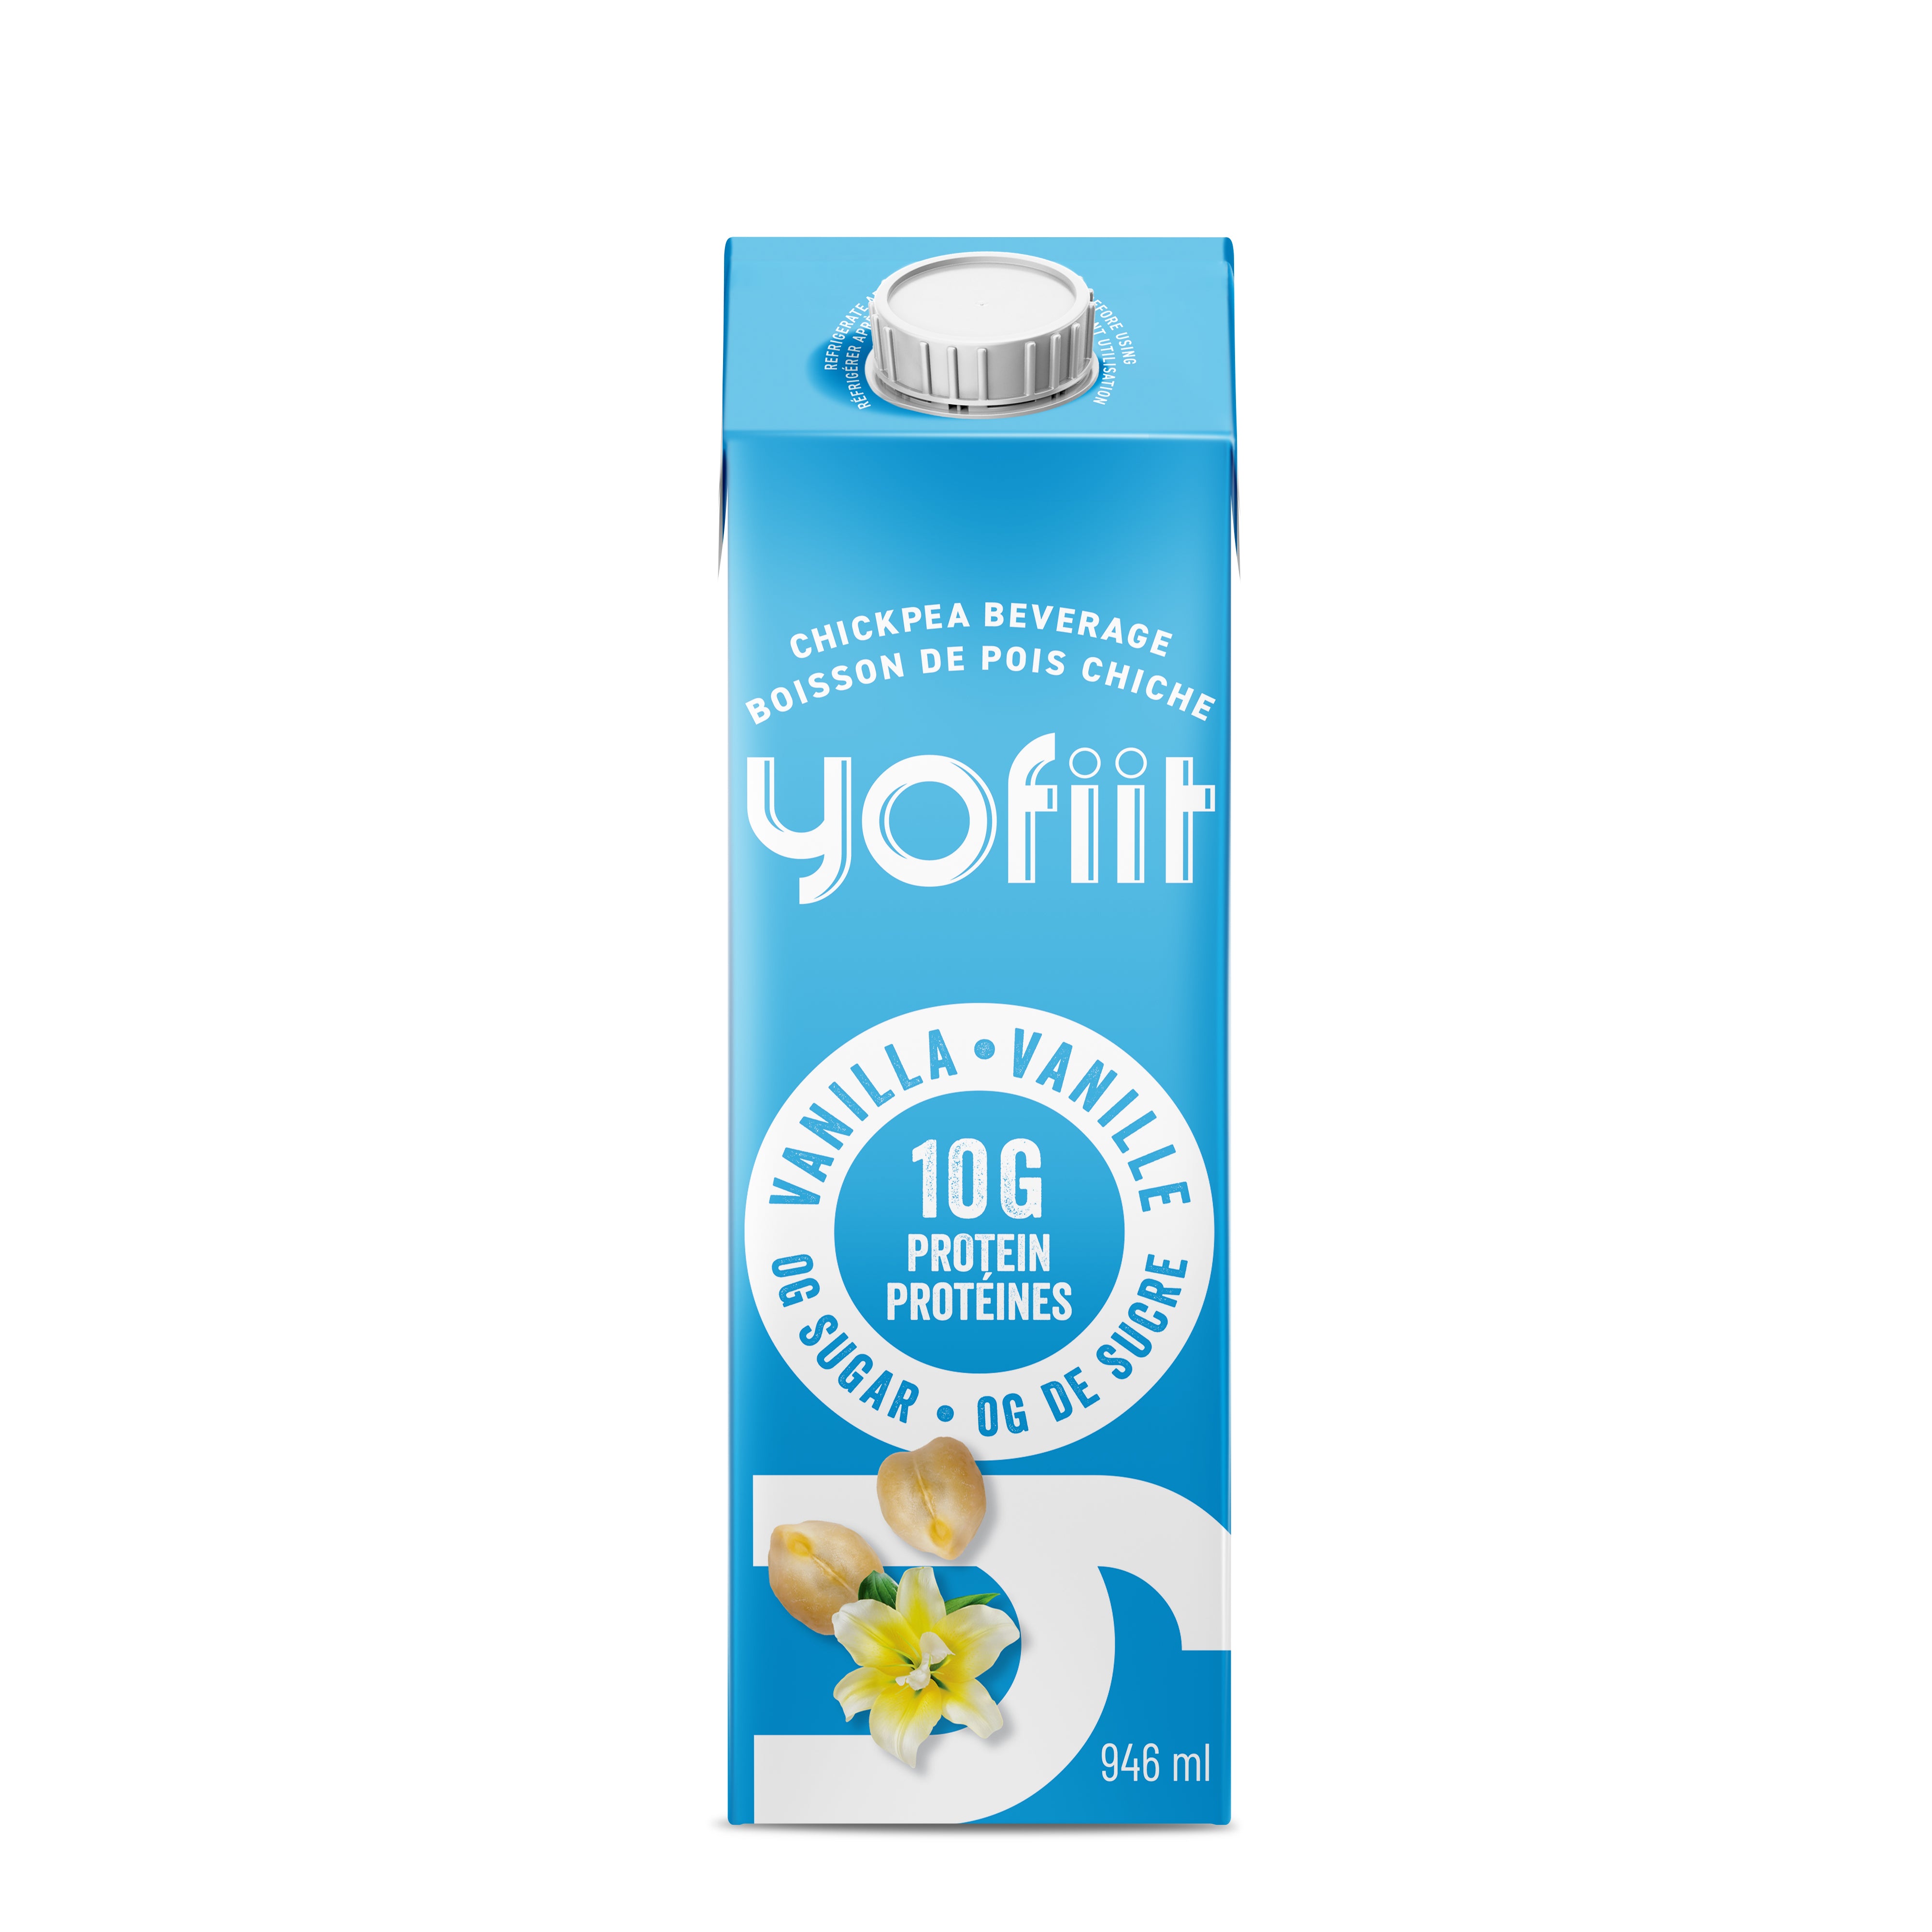 Yofiit - Lait de pois chiche riche en protéines w. lin (vanille)-12 cartons